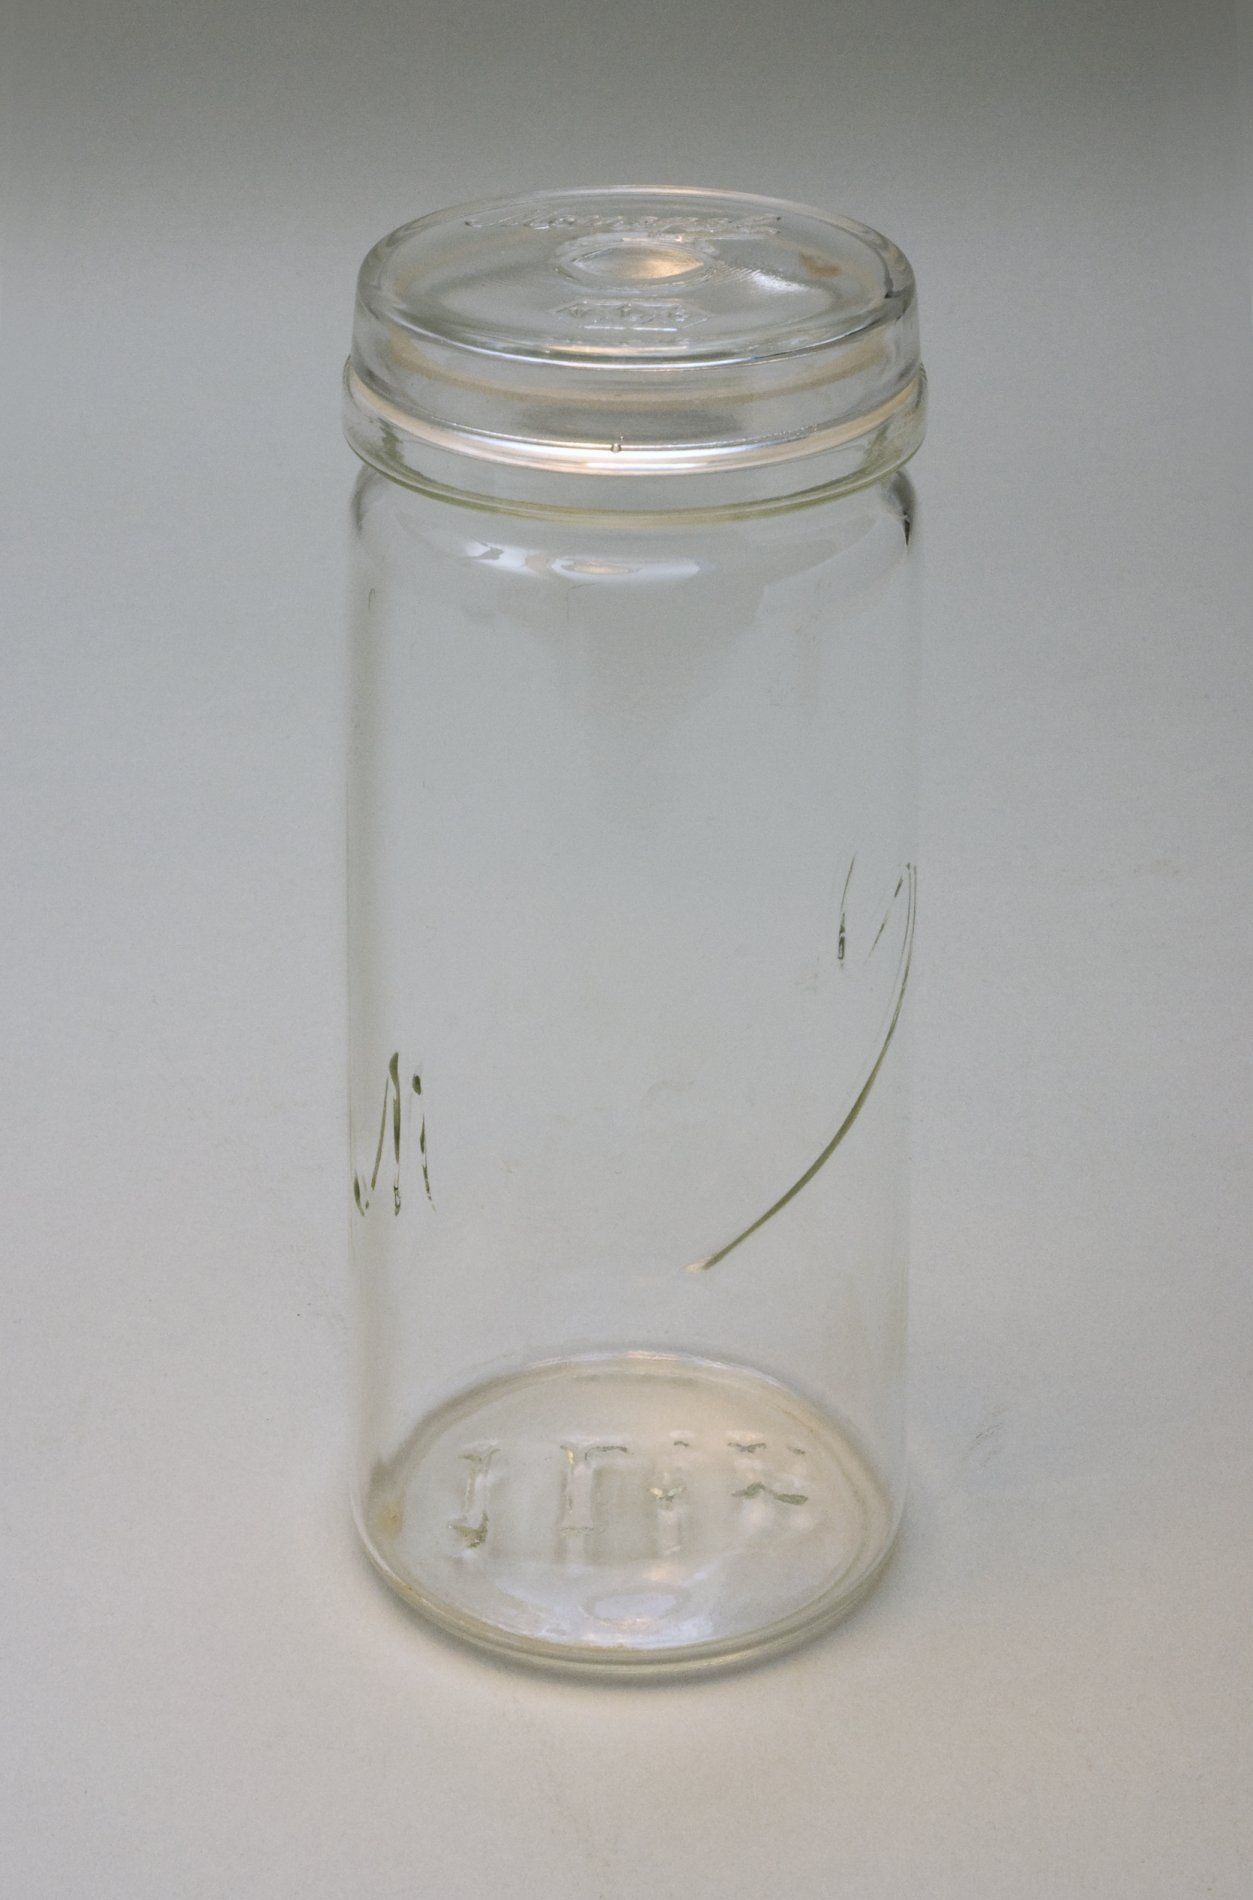 Konservenglas mit Deckel "Monopl 1 Ltr." (Stiftung Domäne Dahlem - Landgut und Museum, Weiternutzung nur mit Genehmigung des Museums CC BY-NC-SA)